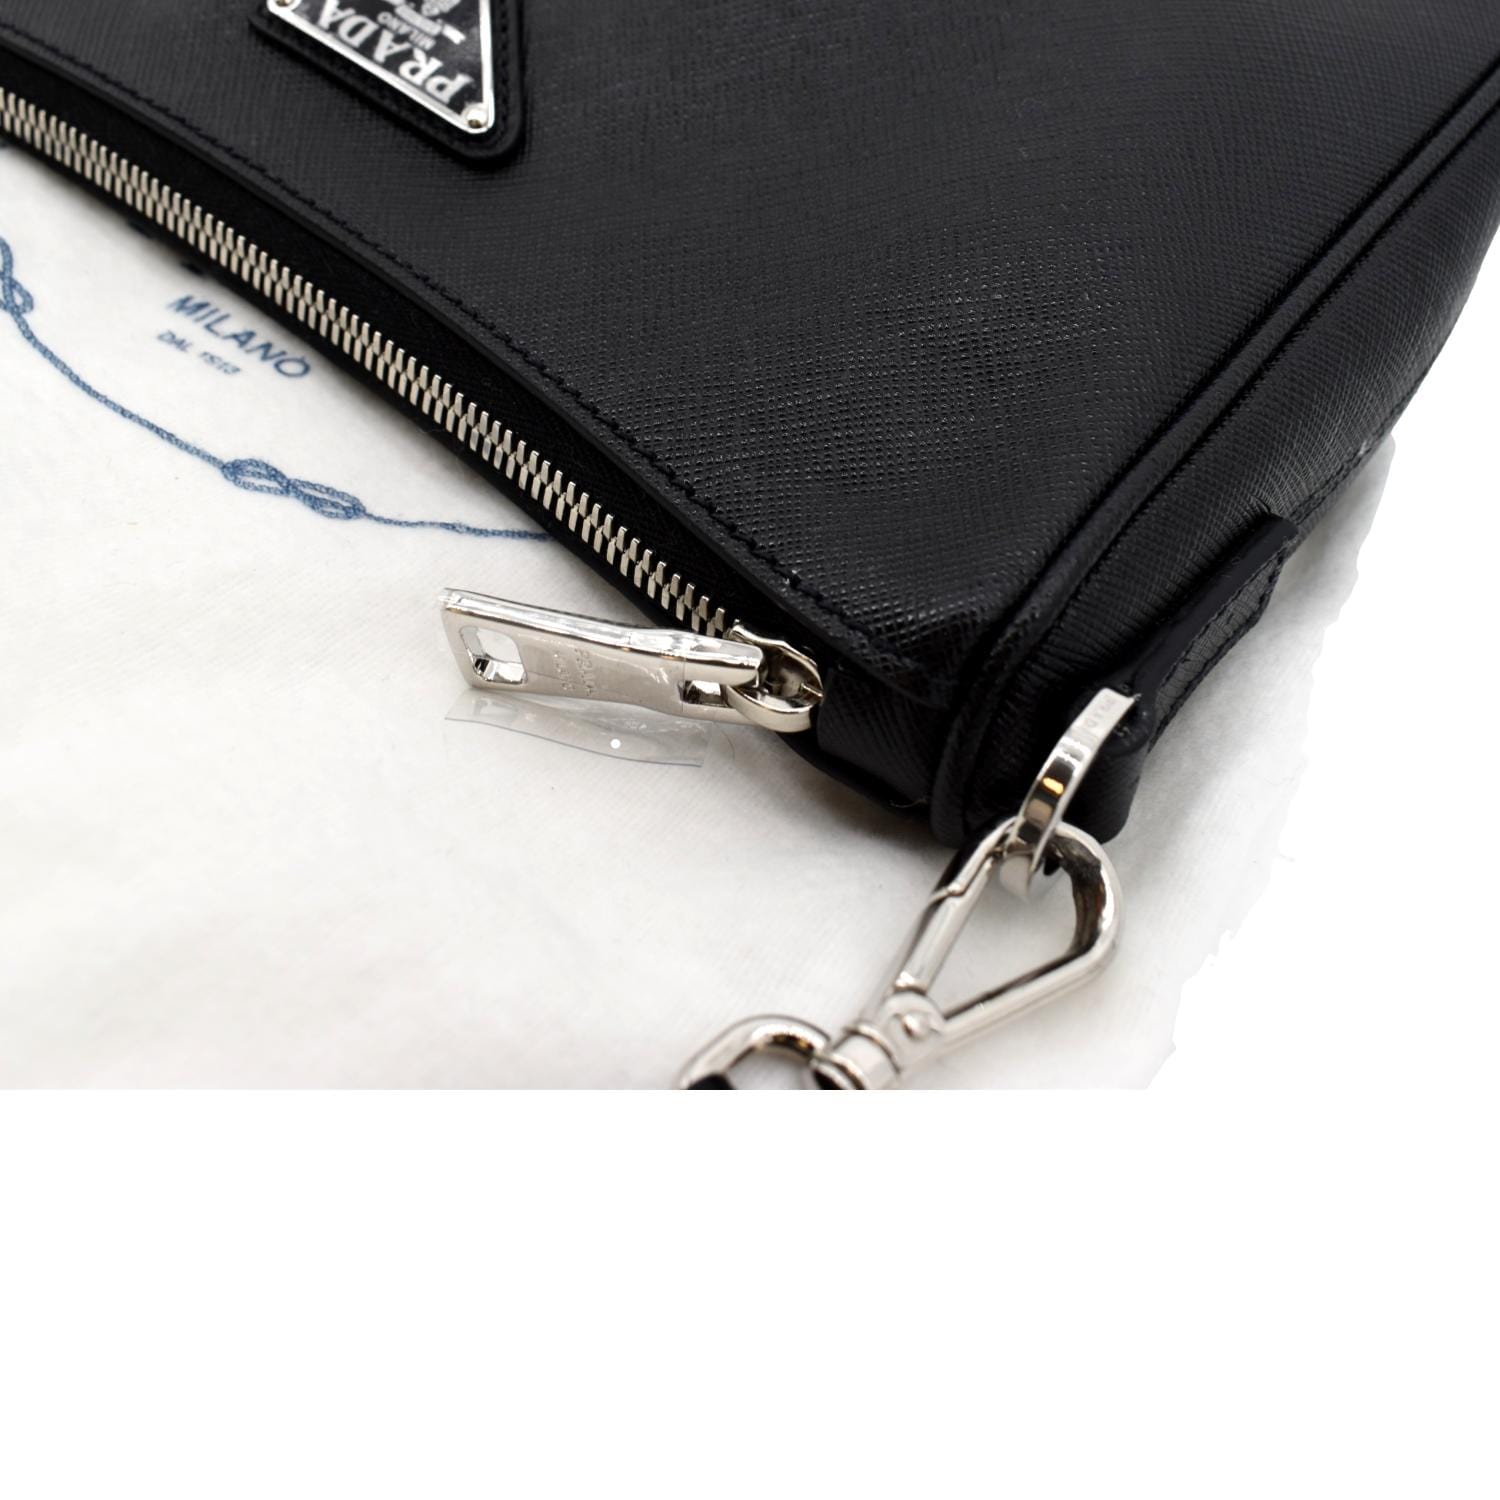 Prada Re-nylon and Saffiano leather shoulder bag –